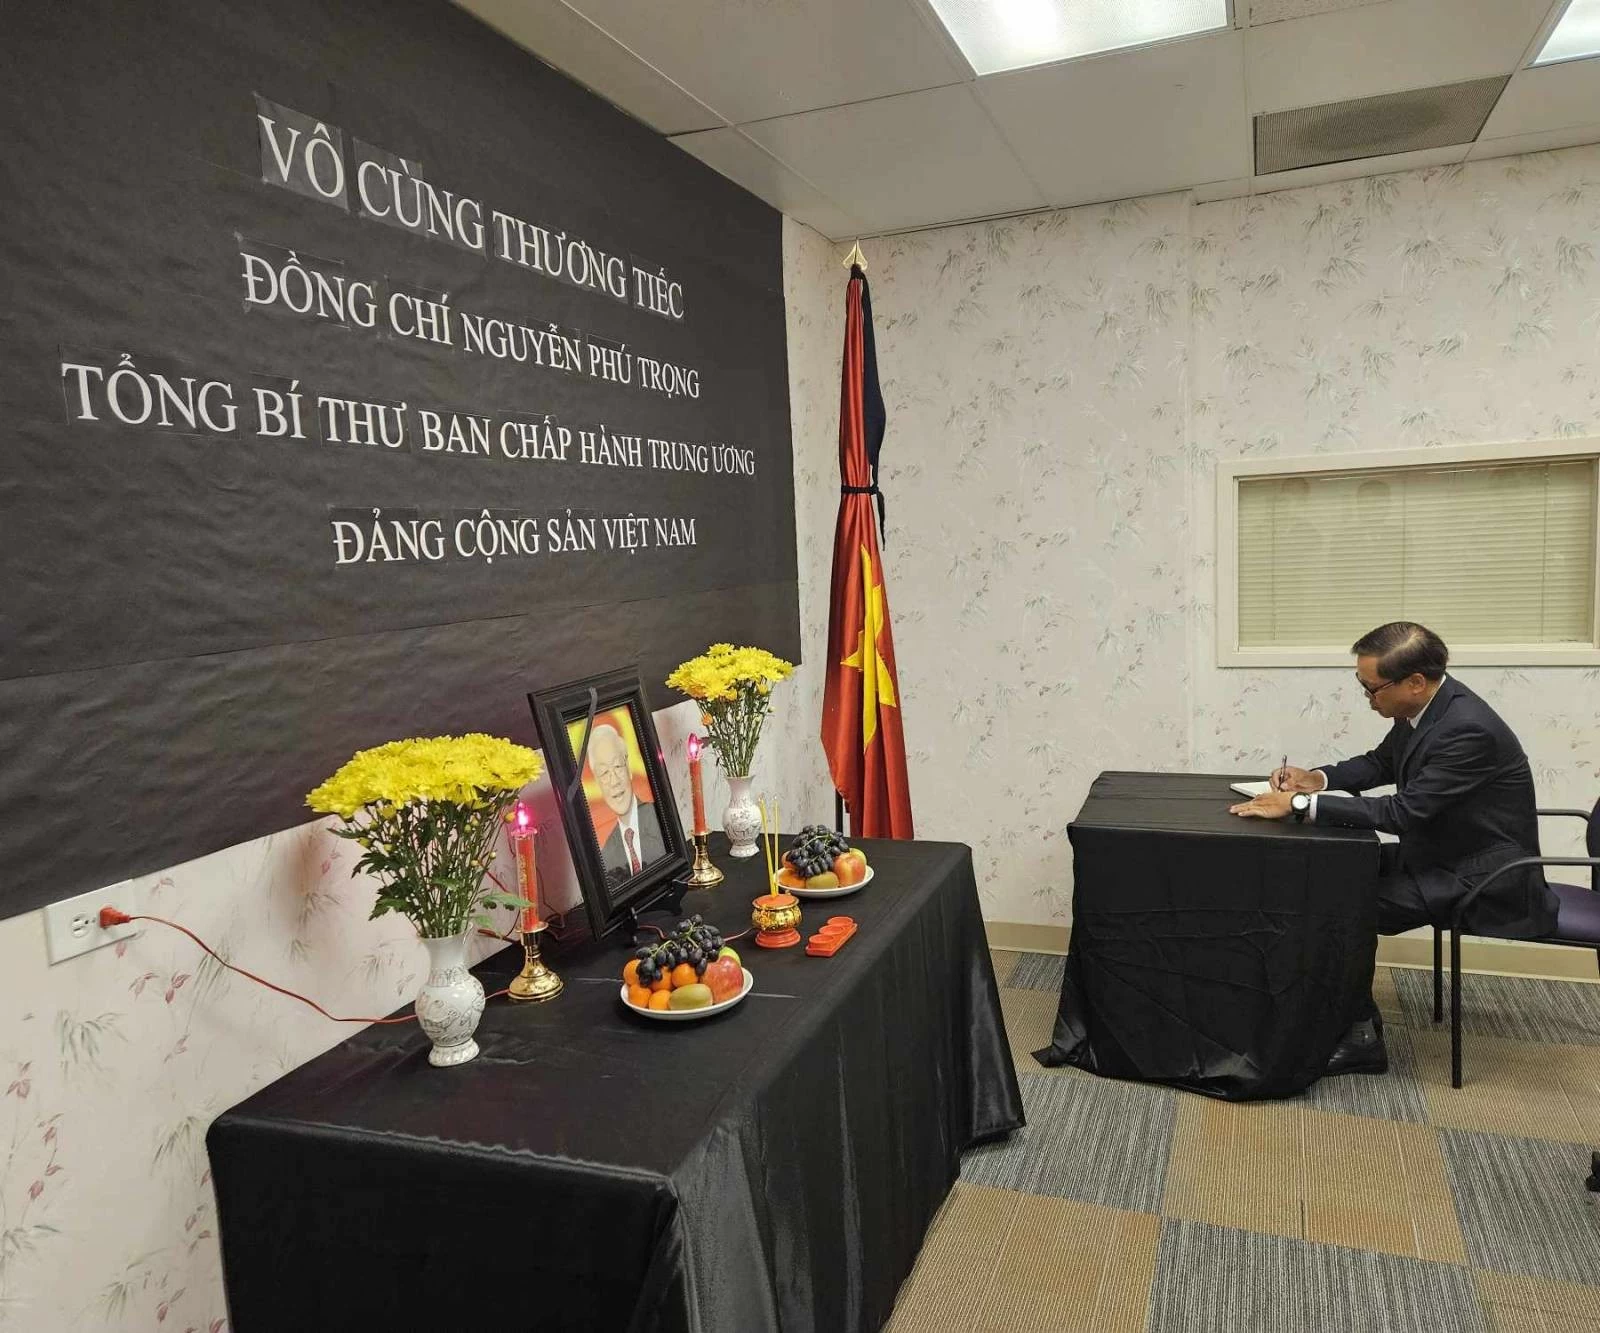 Tổng Lãnh sự quán Việt Nam tại San Francisco, Hoa Kỳ tổ chức lễ viếng Tổng Bí thư Nguyễn Phú Trọng